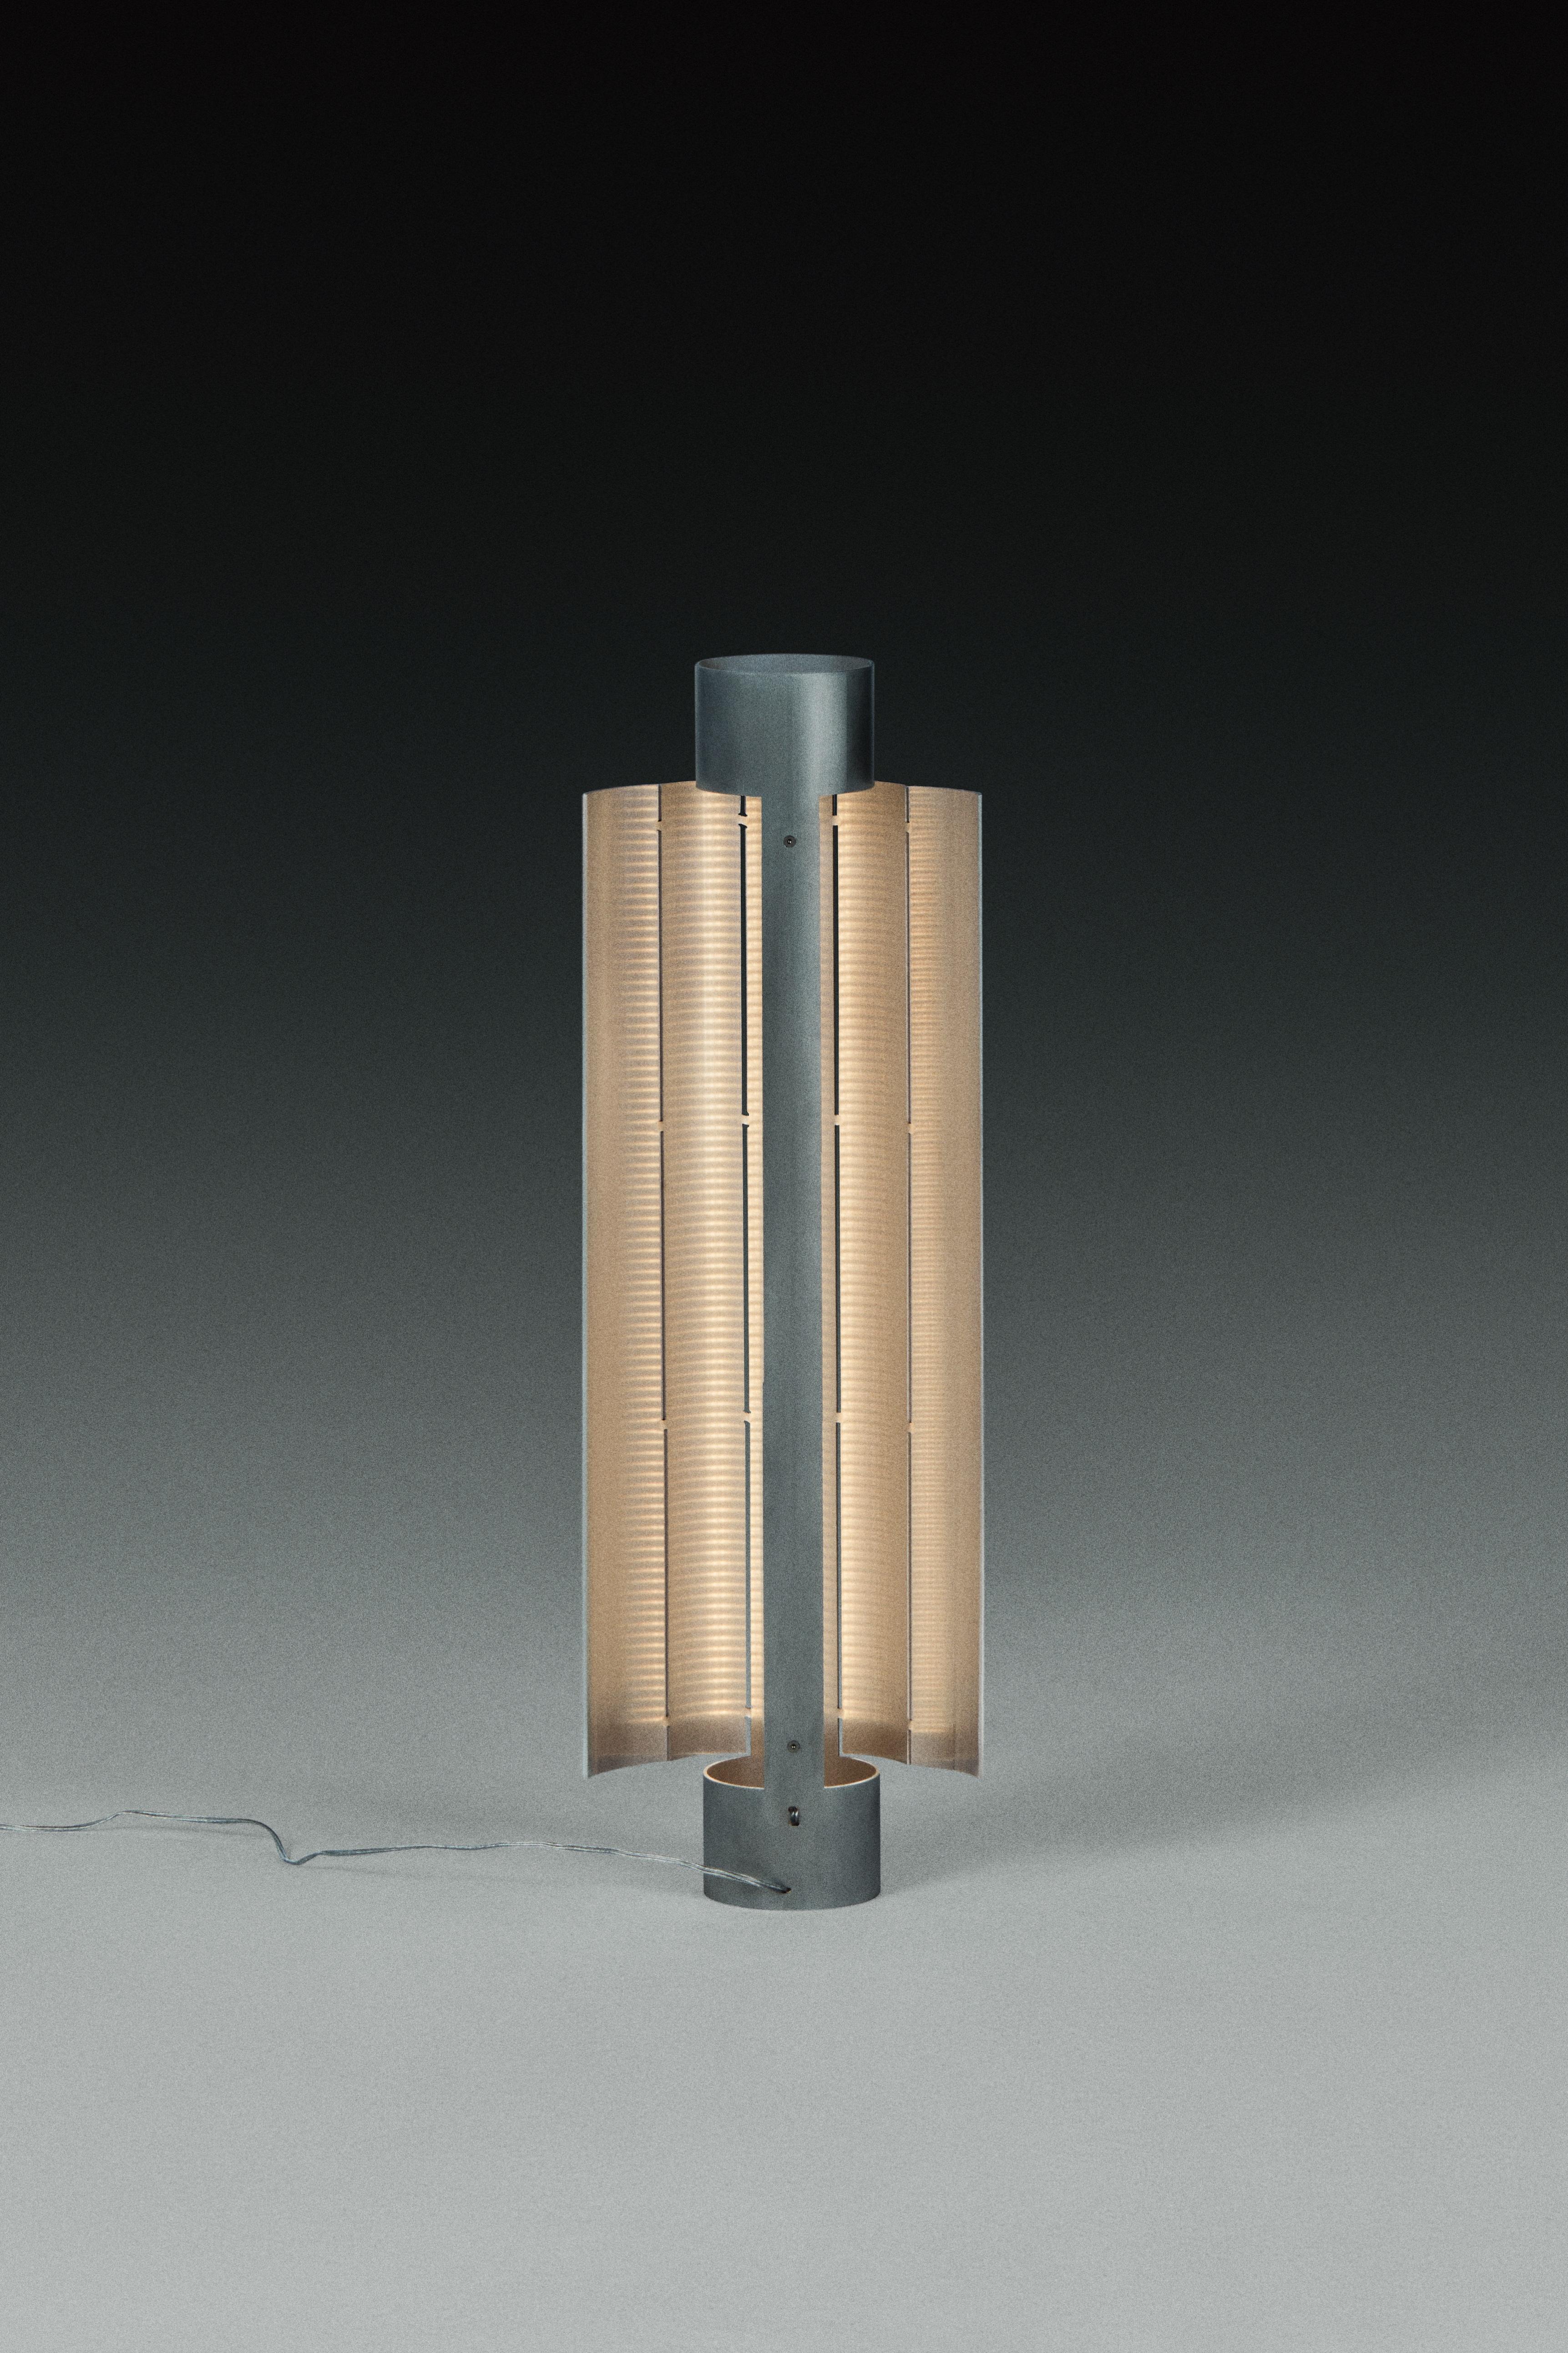 Lampe de table Gvpo de Kutarq Studio
Matériaux : Aluminium.
Dimensions : D 21 x L 8 x H 56 cm

Aluminium mat, patiné à la main.
Source lumineuse : 2 x bandes parallèles de LED chaudes, IP20 24V 14,4W/m - 72W 2700K, dimmable.

La lampe à poser GVPO